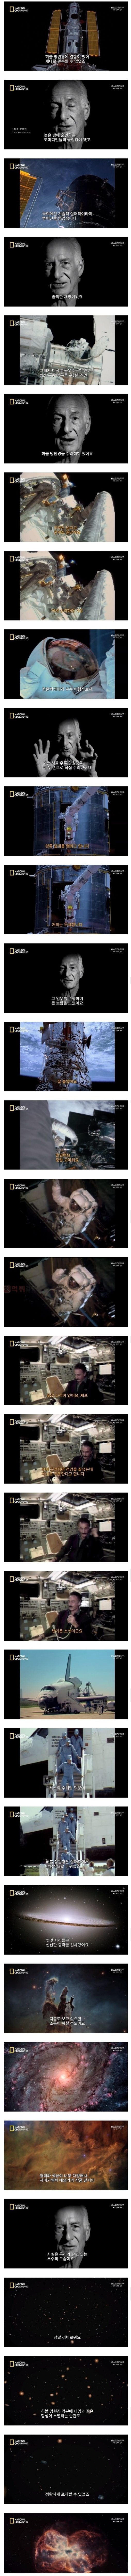 우주공간에서 혼자 허블망원경을 수리한 사나이